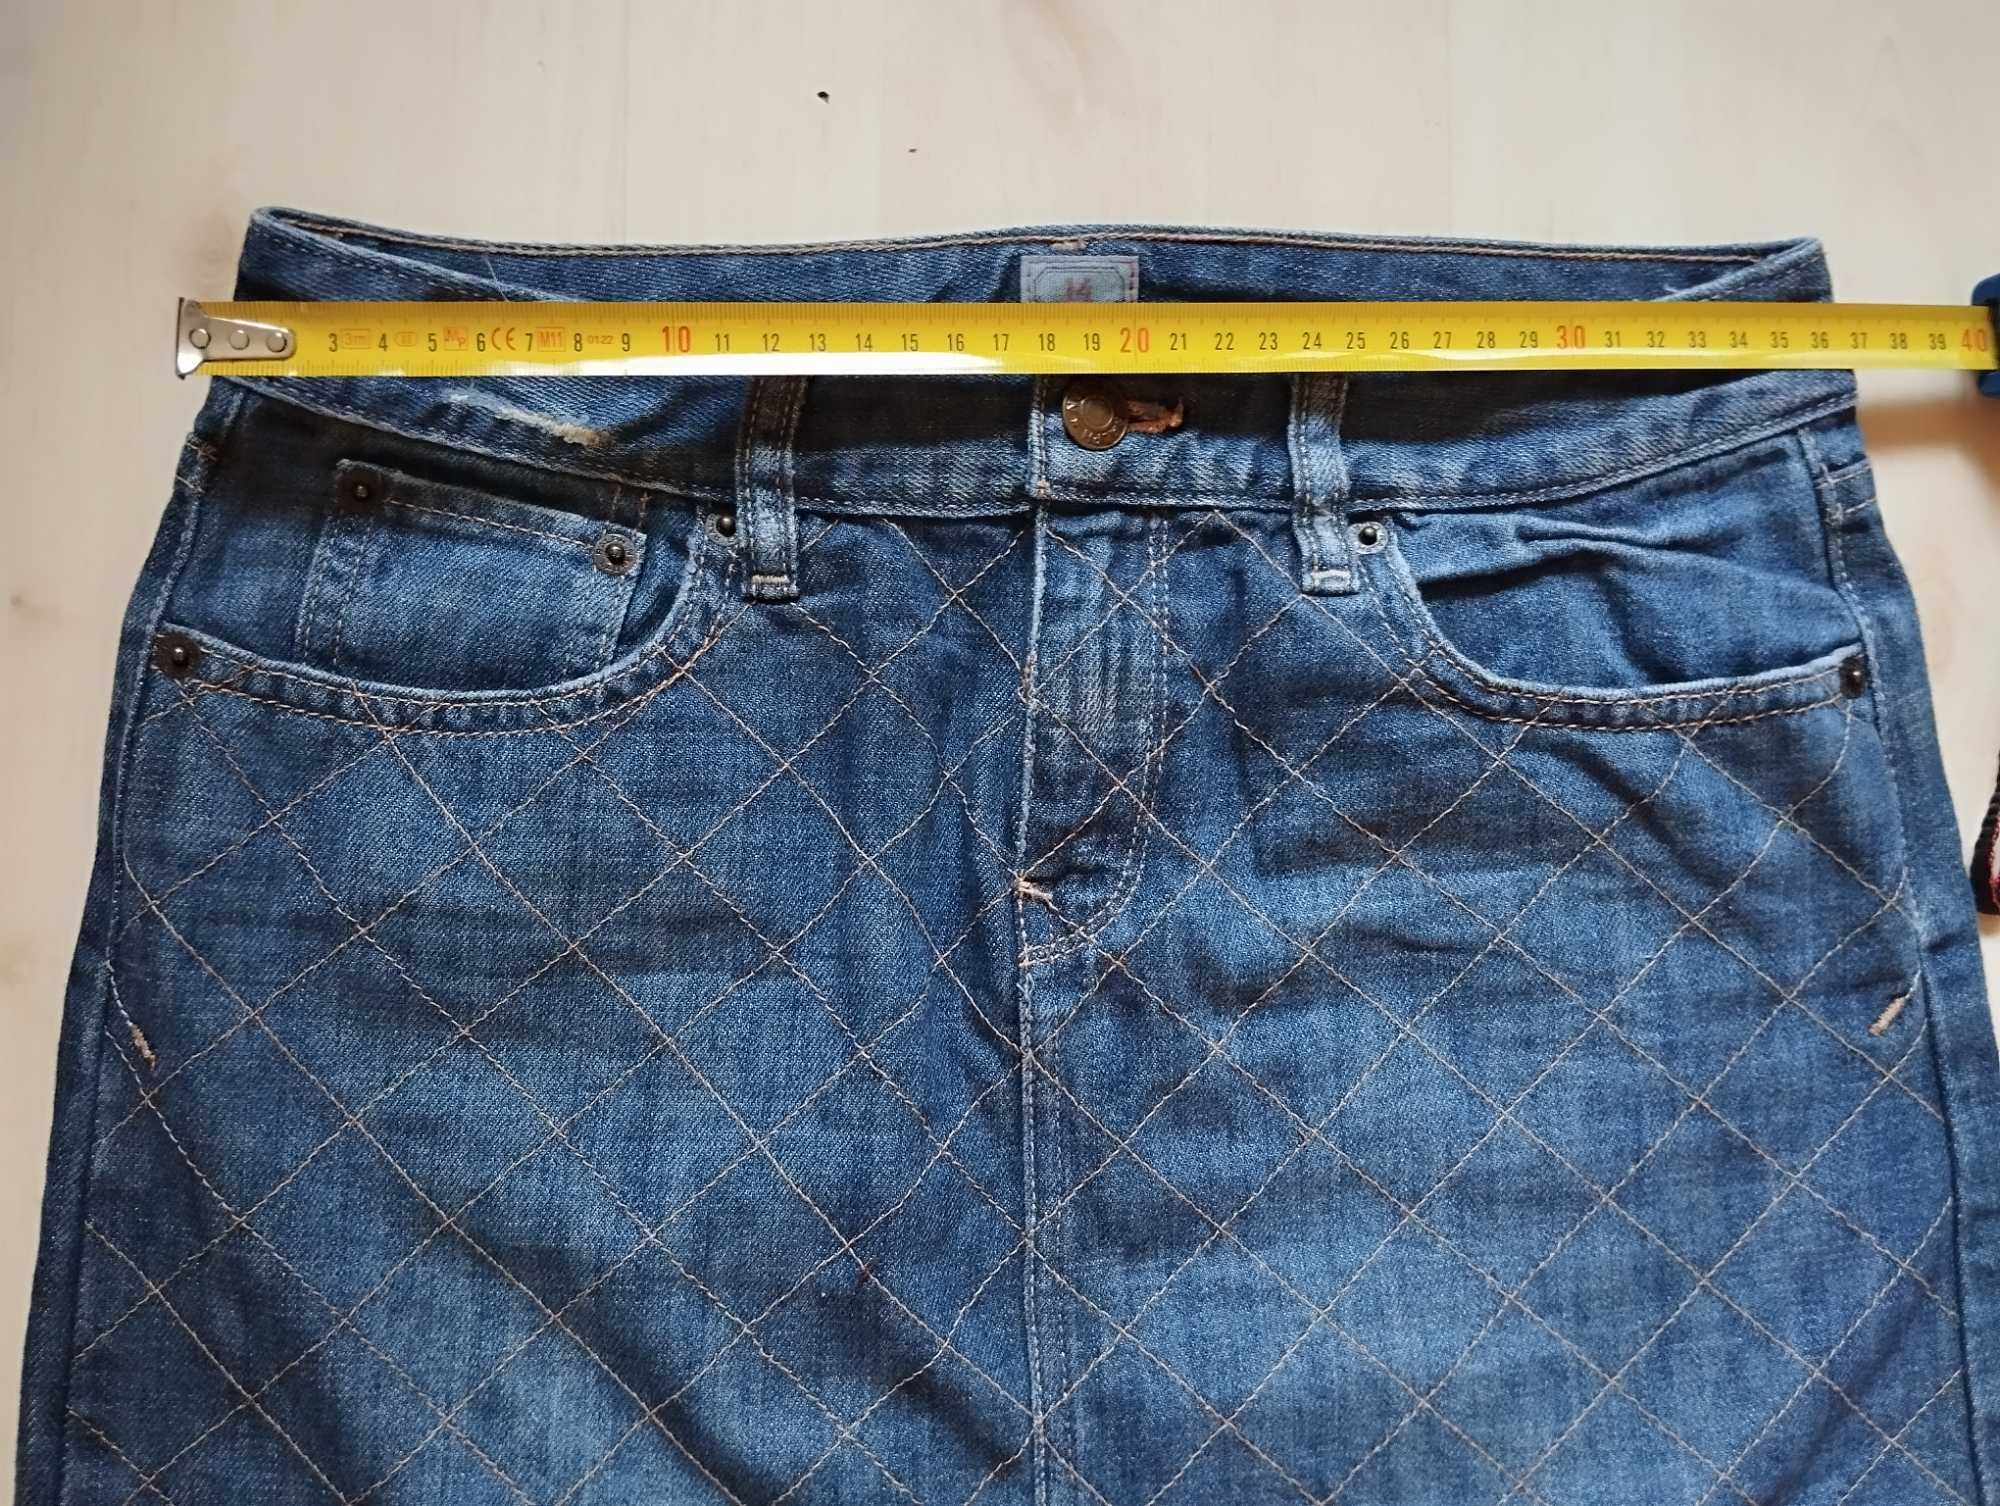 Ralph Lauren spódniczka jeansowa niebieska przecierana XS vintage piko